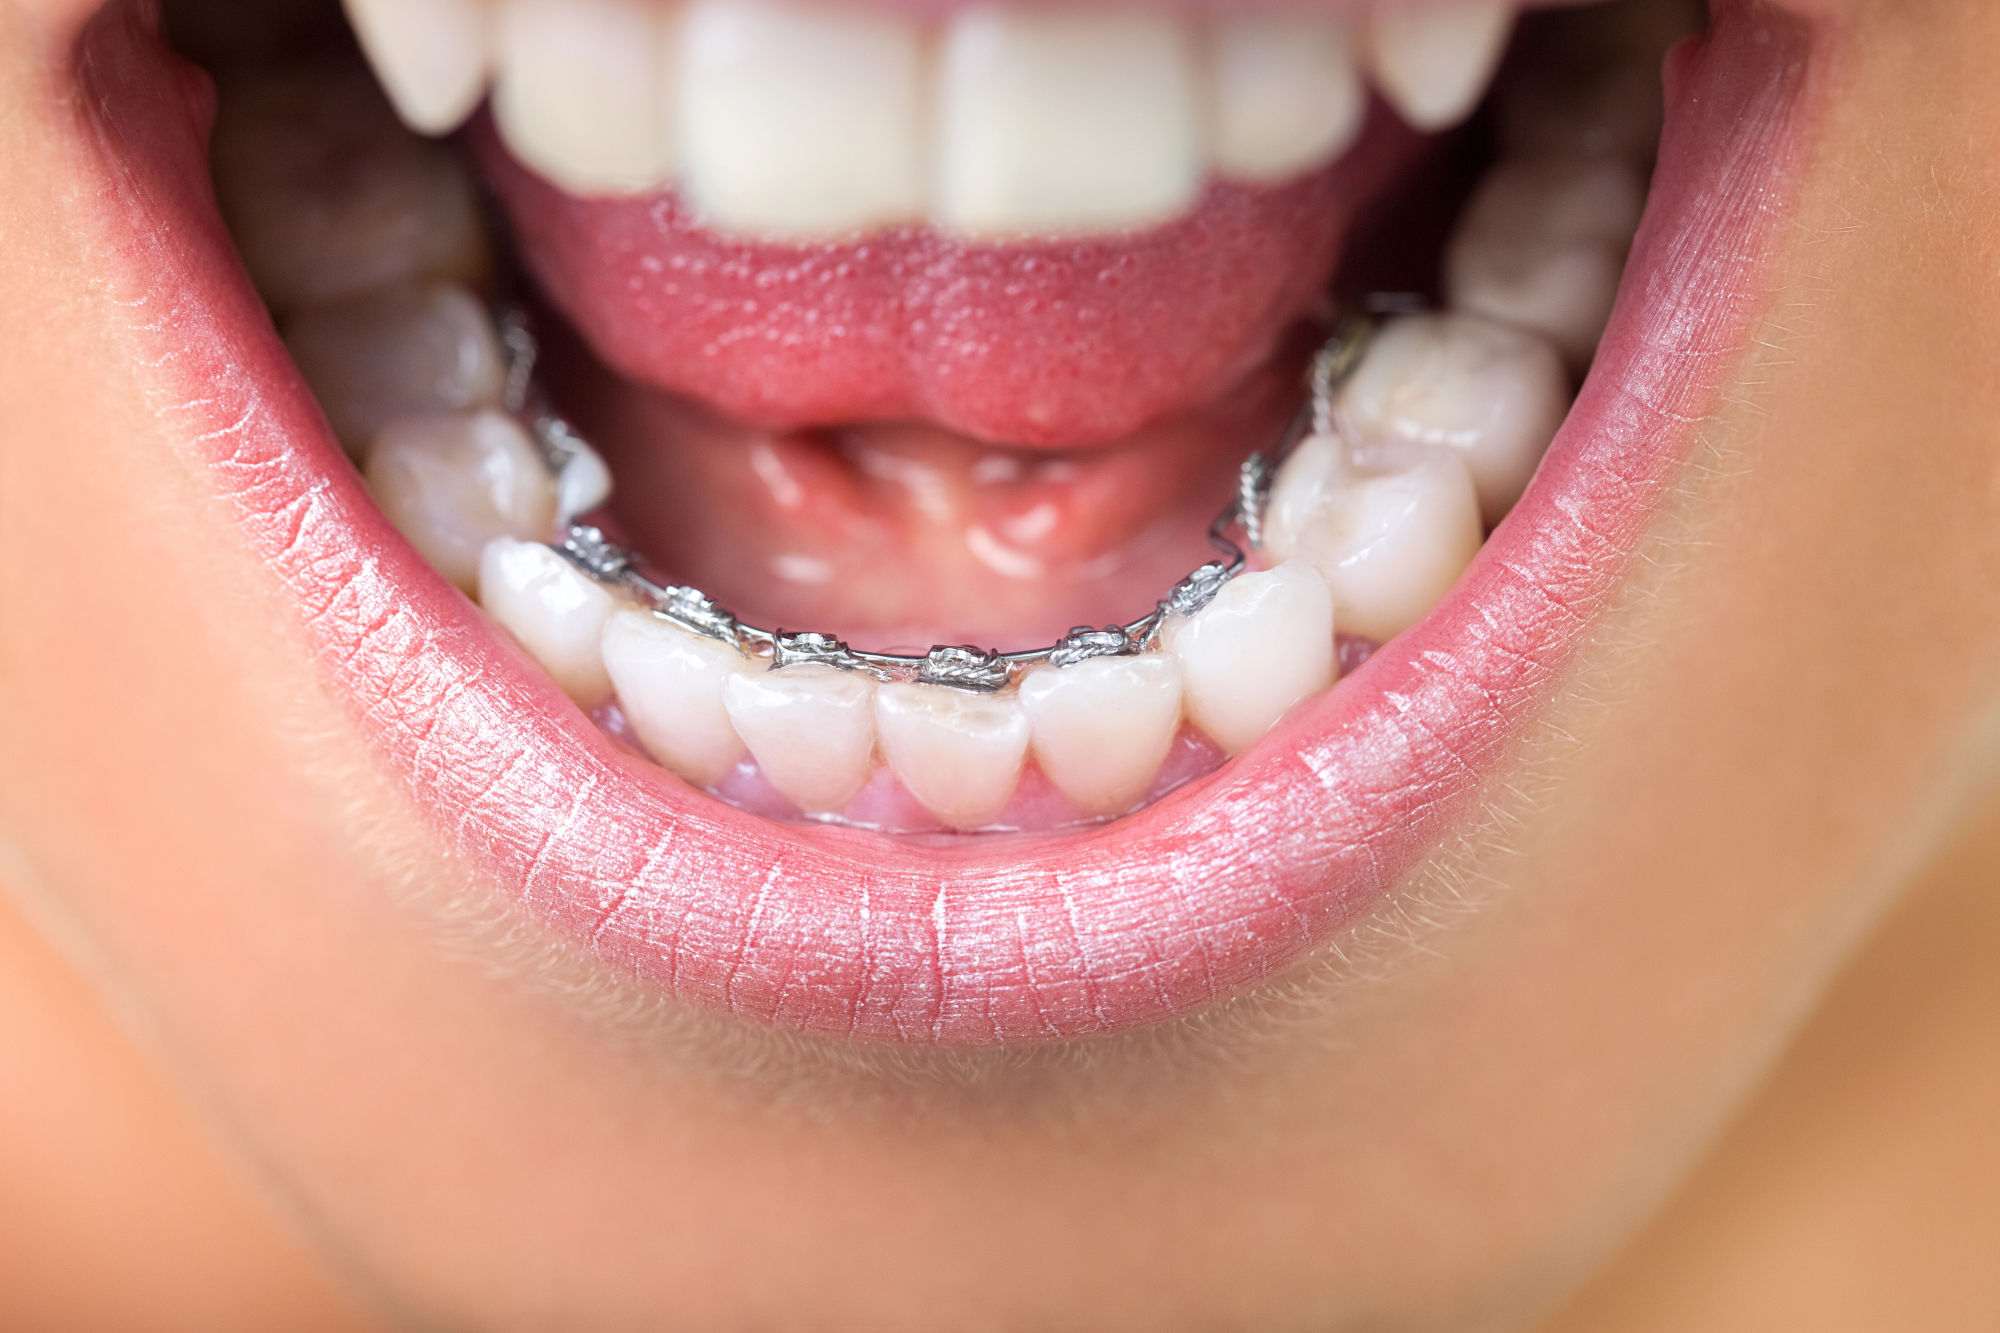  Contrairement aux bagues classiques positionnées sur la face visible des dents, l'appareil lingual se fixe sur leur face interne, côté langue. Ainsi, il reste totalement invisible pour votre entourage, vous permettant de suivre votre traitement orthodontique en préservant votre image et votre sourire.